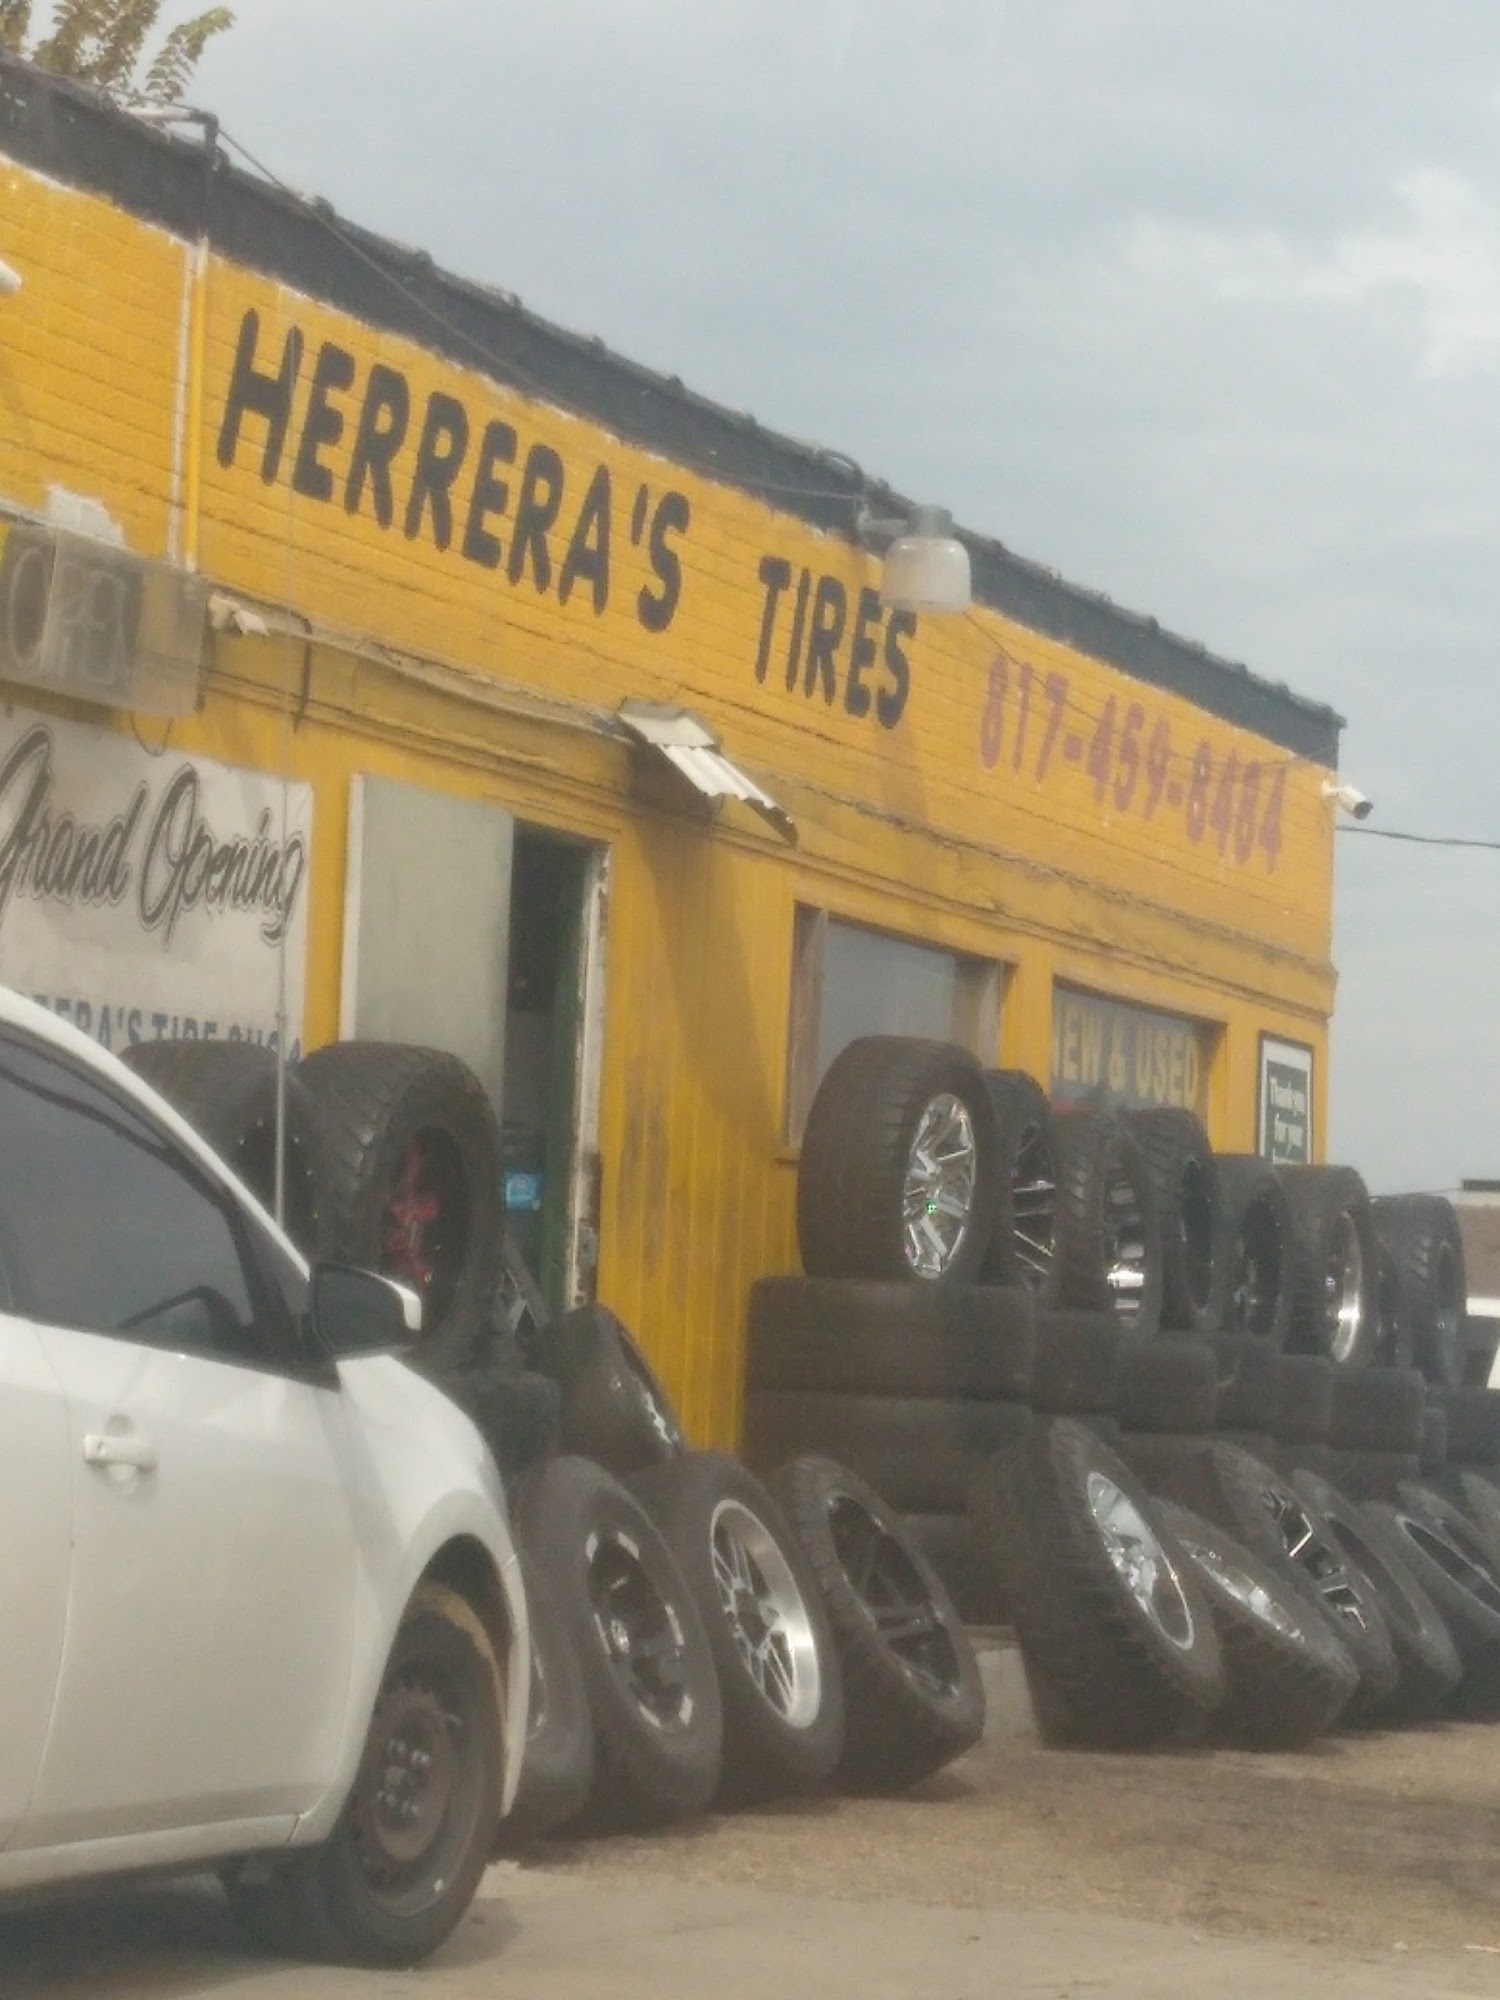 Herrera's Tire Shop